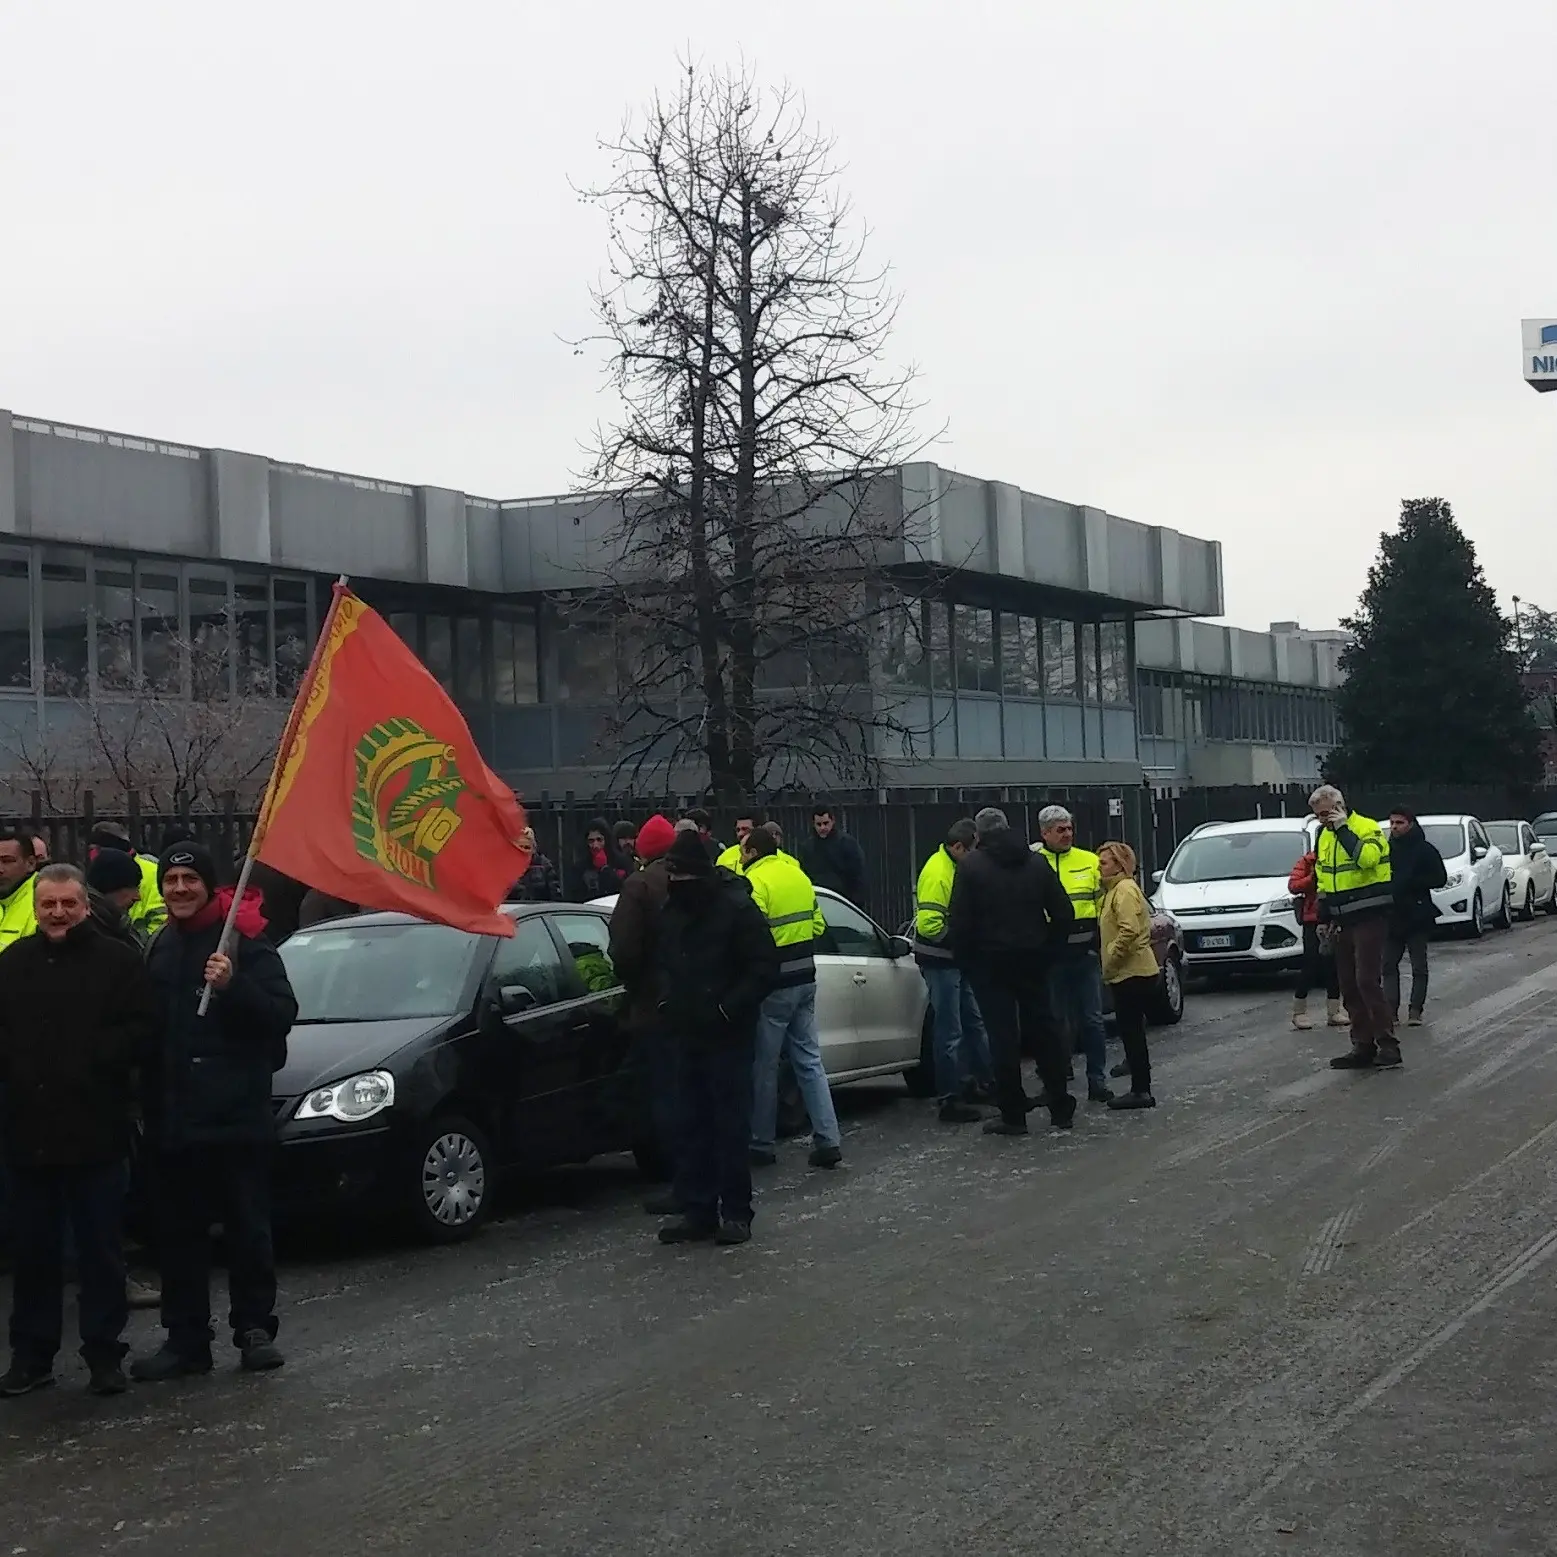 Nicotra di Ciserano (Bg): dopo gli scioperi arriva l'accordo